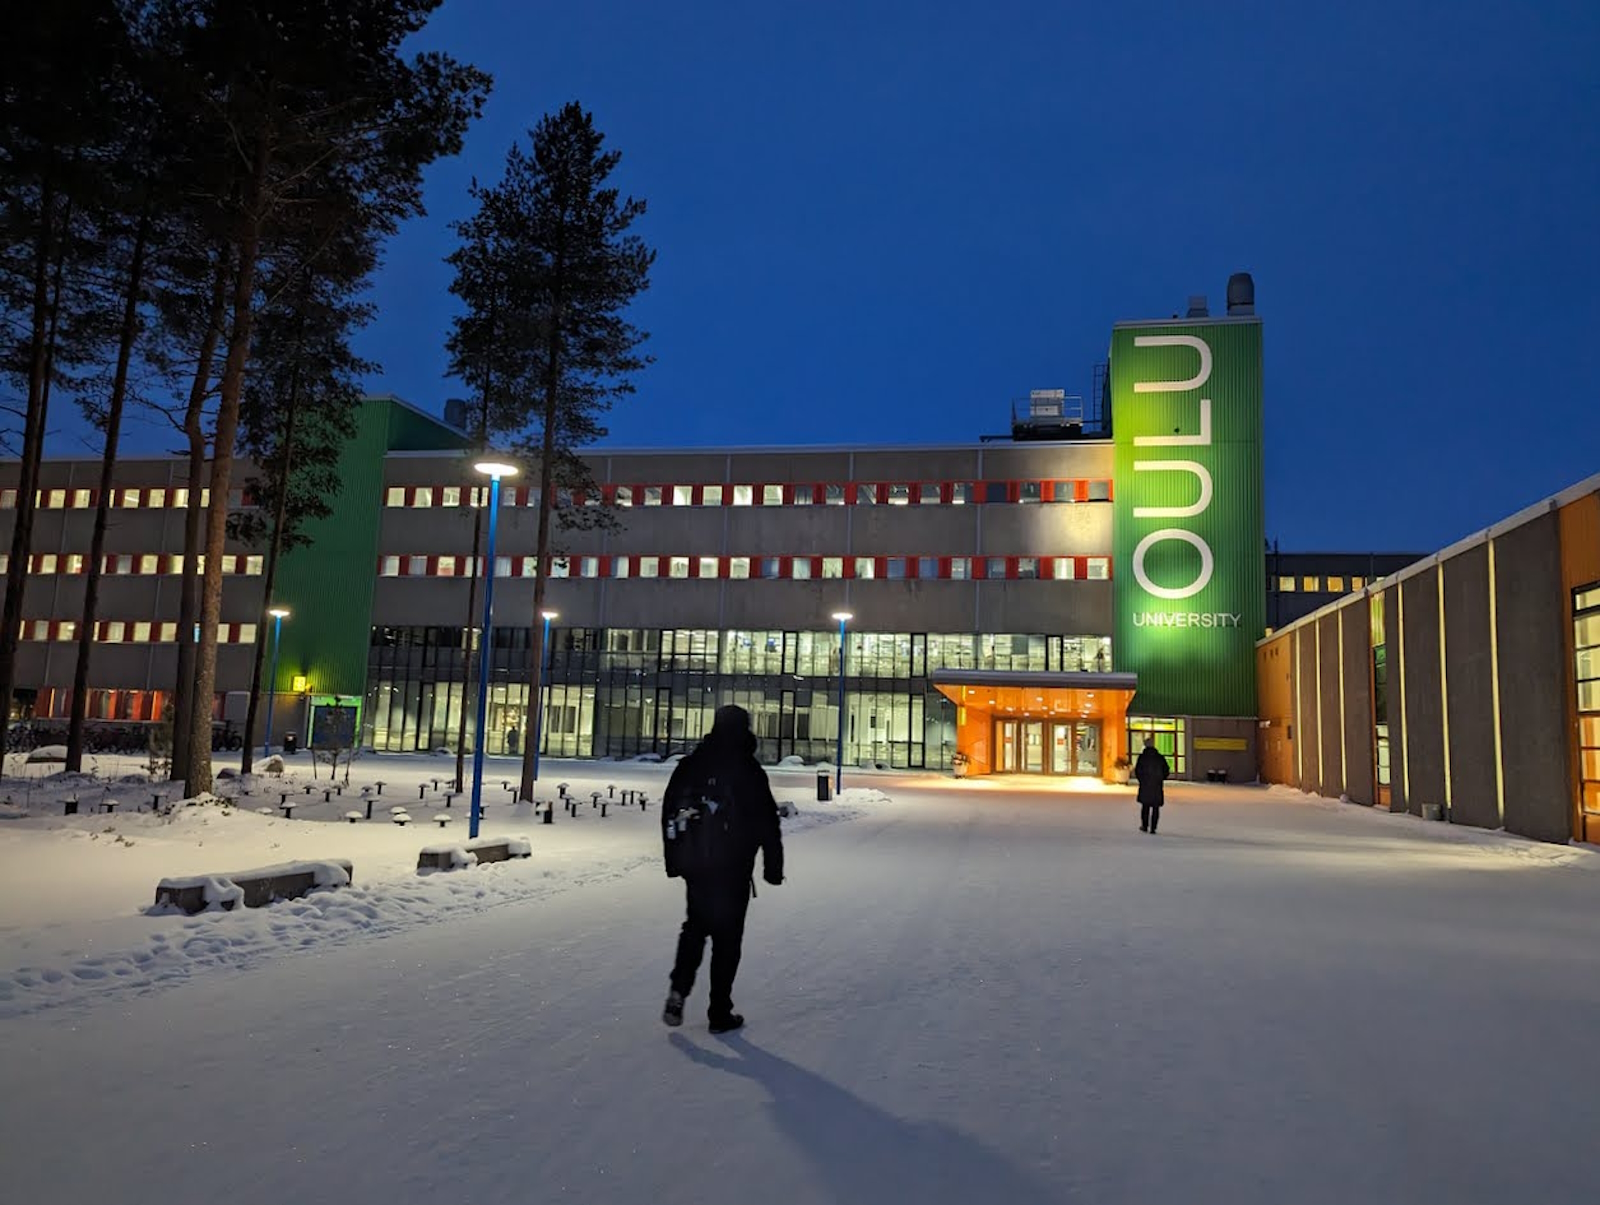 L’université de Oulu est une petite ville dotée de petits commerces, de nombreux coins de détente et d’un fablab. Ici, 250 projets de recherche tournent autour des télécommunications sans fil. © Sylvain Biget